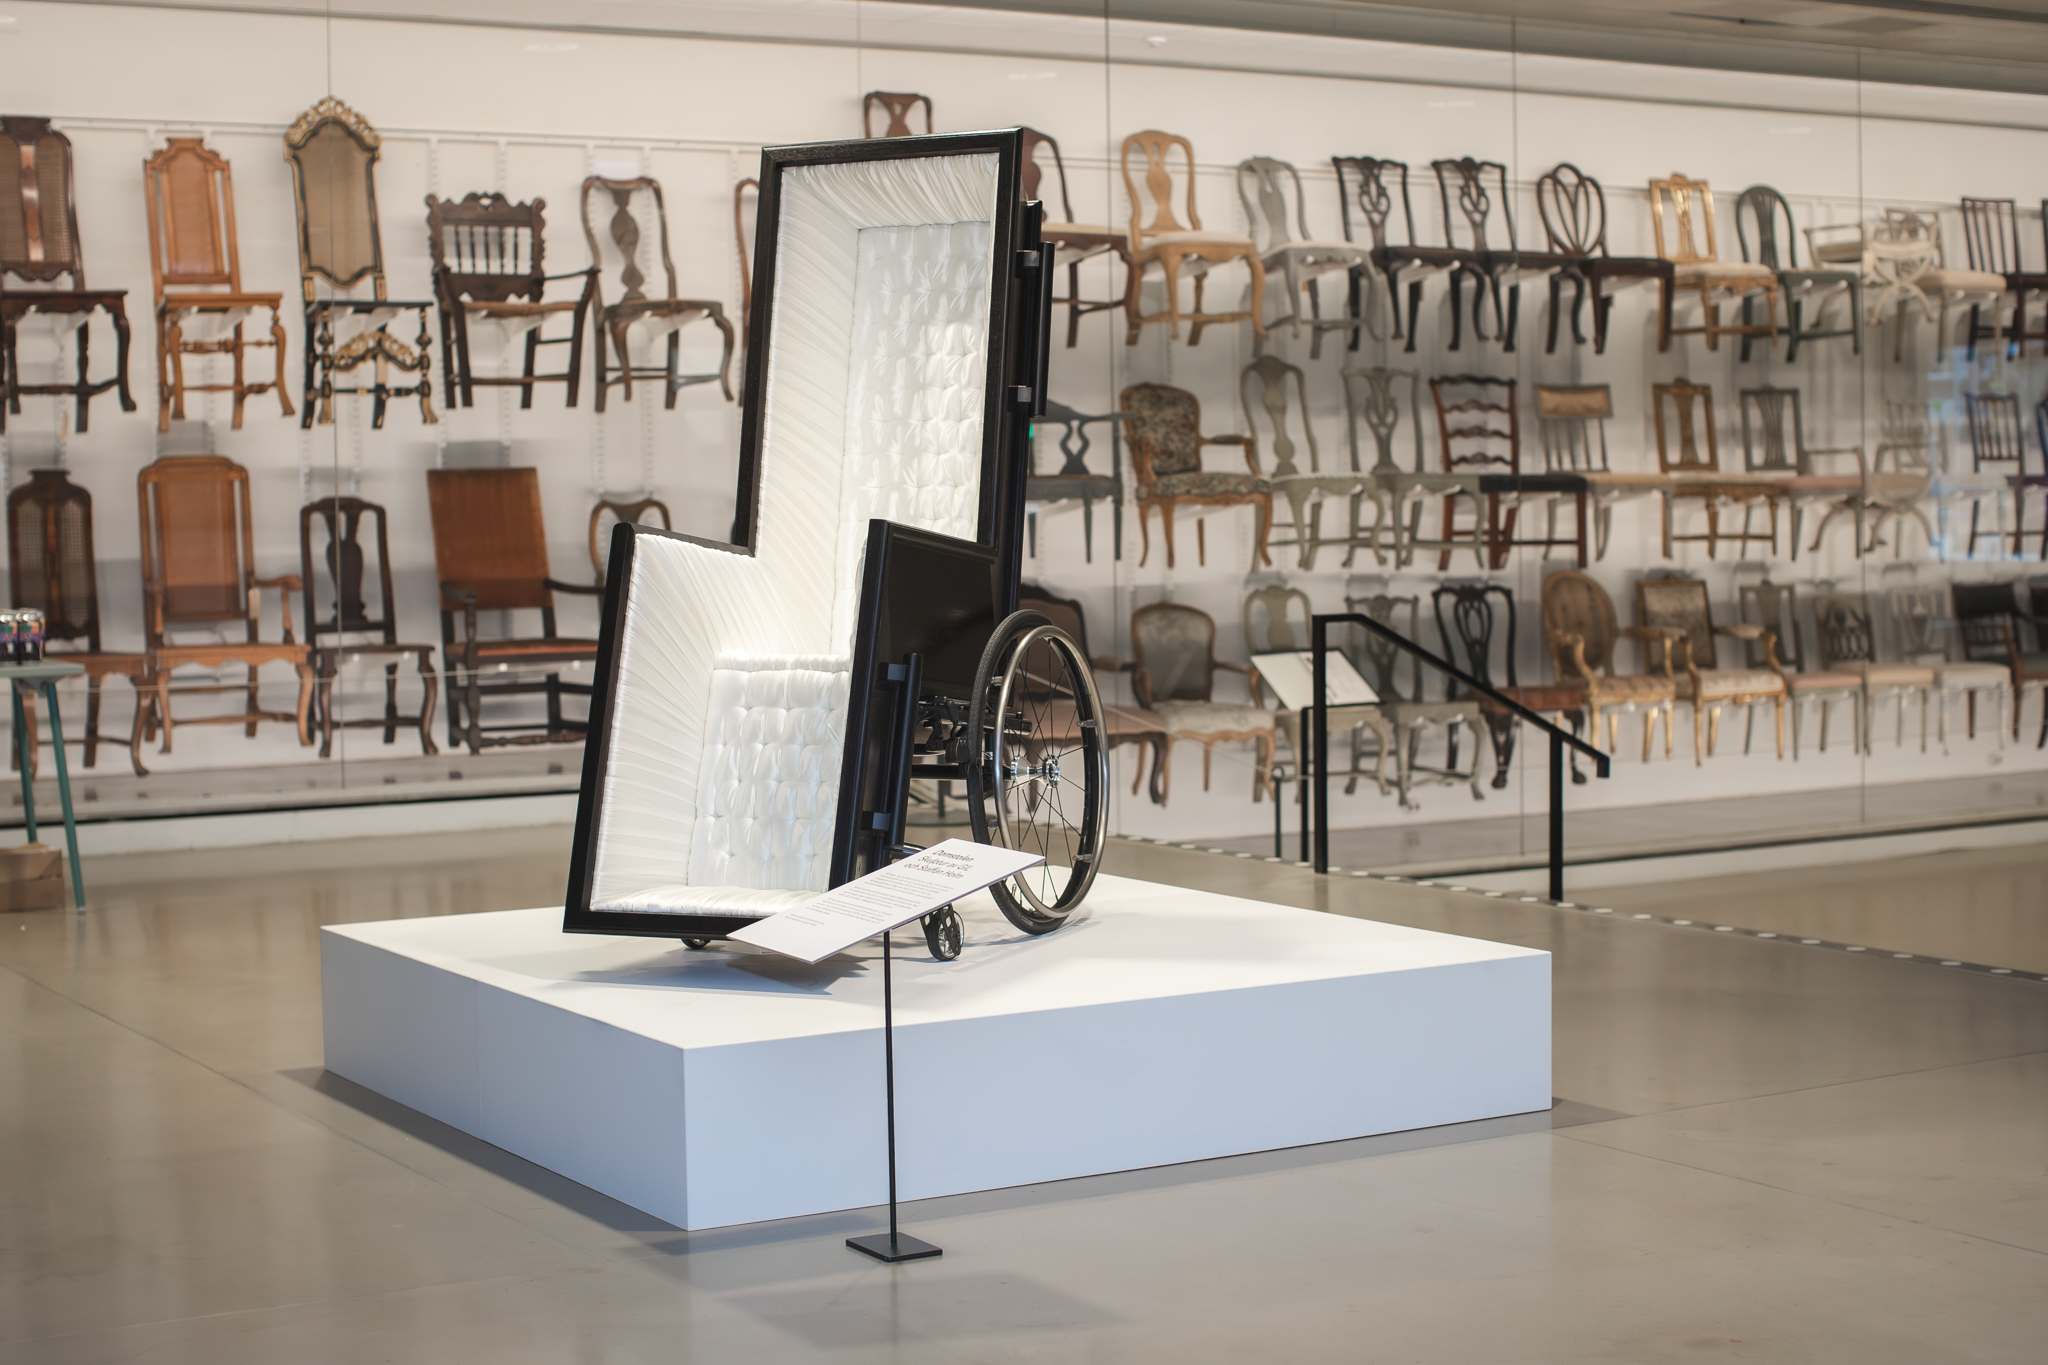 En likkista och en rullstol i ett, utställd på museum, en utställning med vanliga stolar syns i bakgrunden.